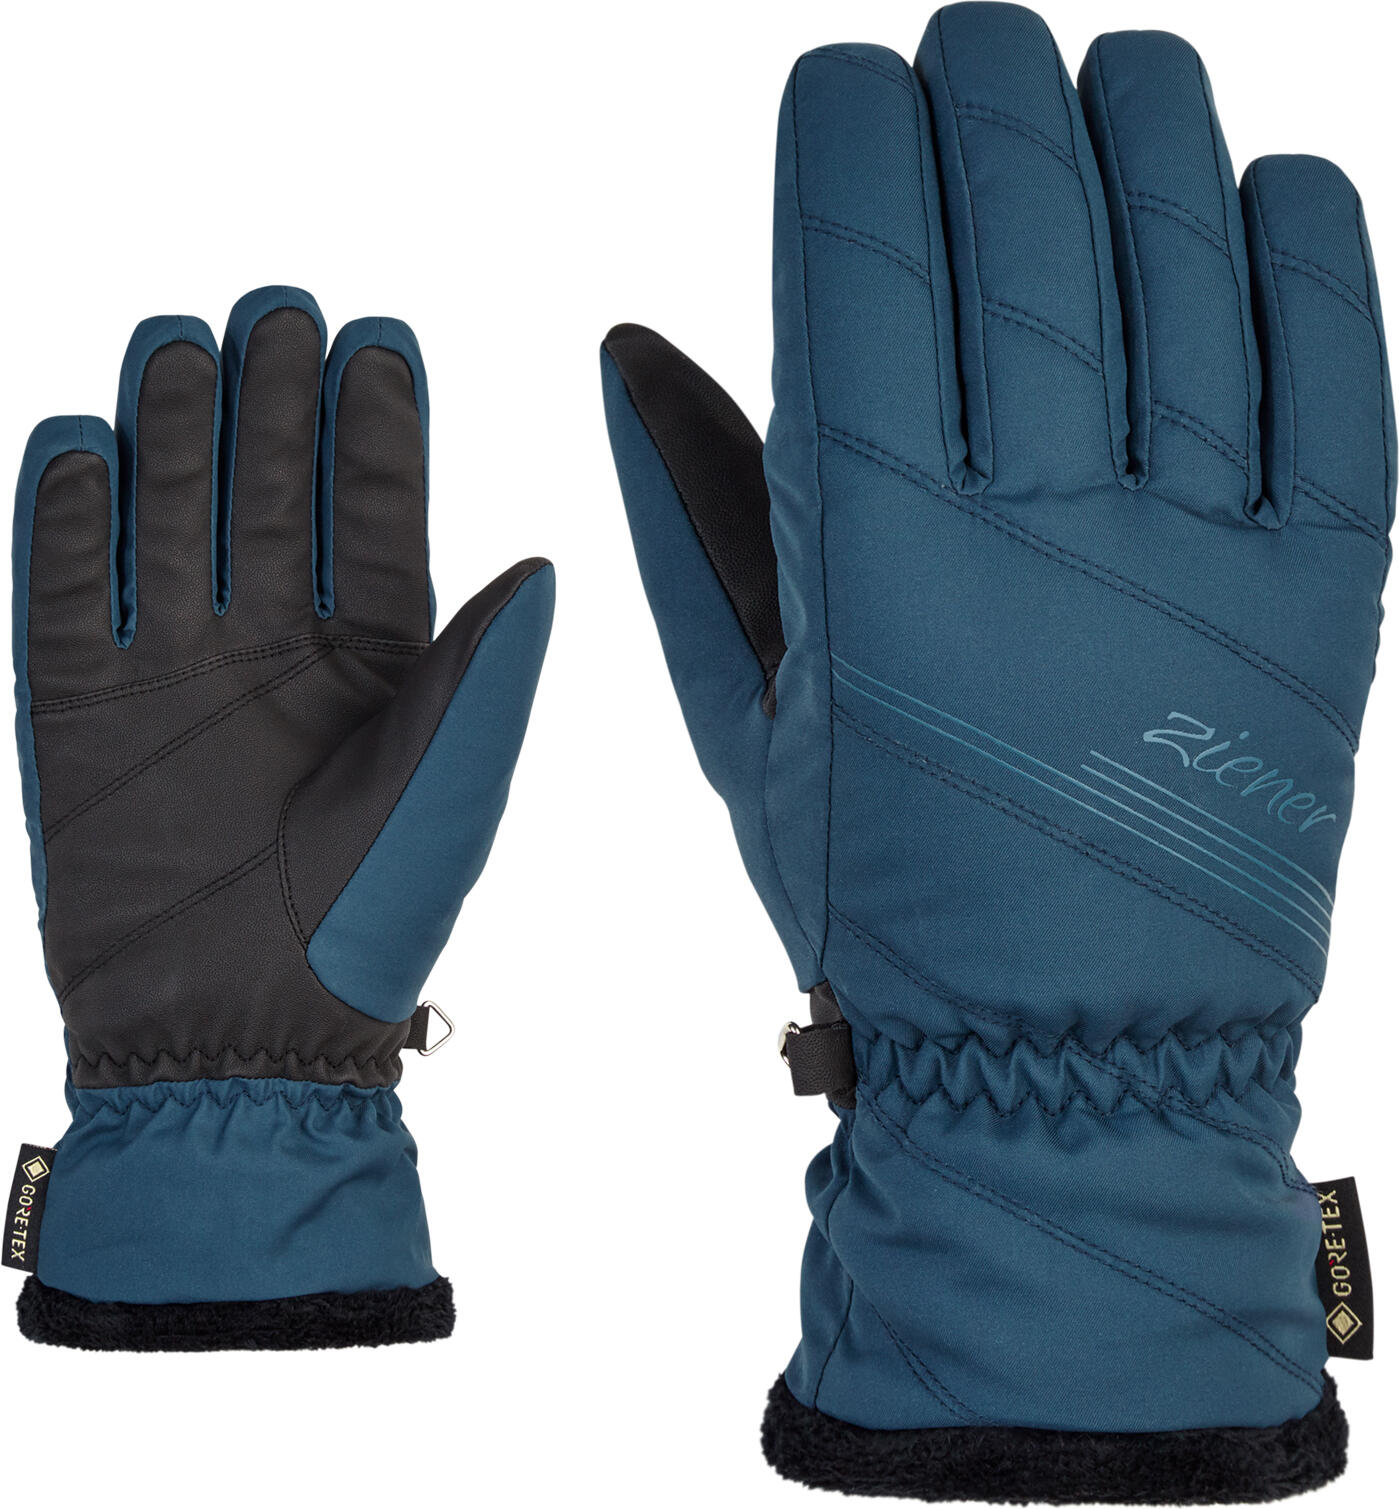 ZIENER Kasia GTX lady glove, blue